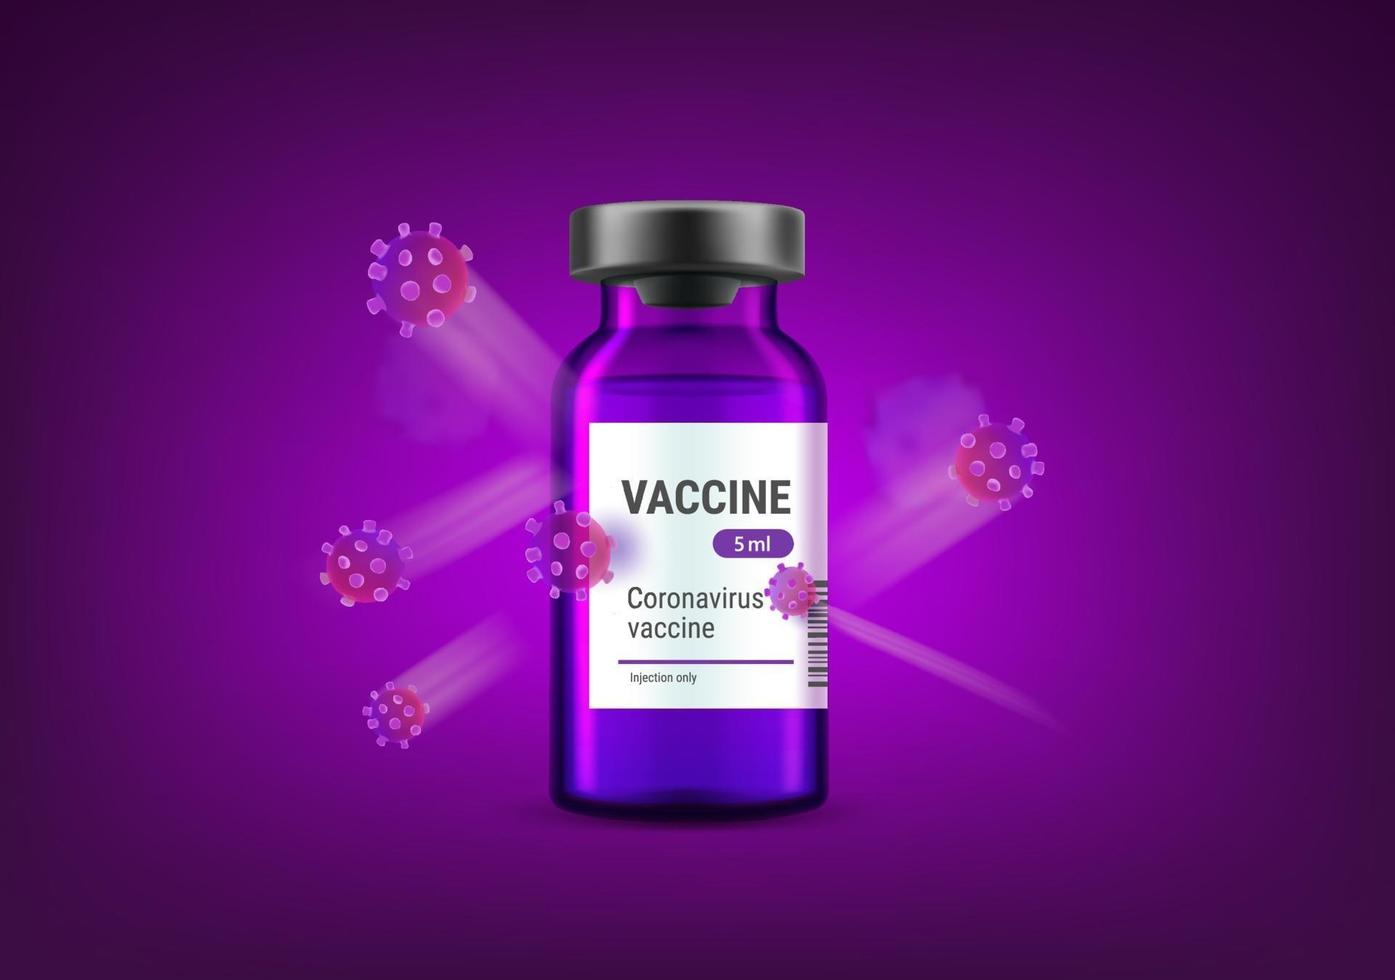 Vacuna covid-19 versus concepto de vector de virus. Ilustración de coronavirus con vial y moleculas de coronavirus.